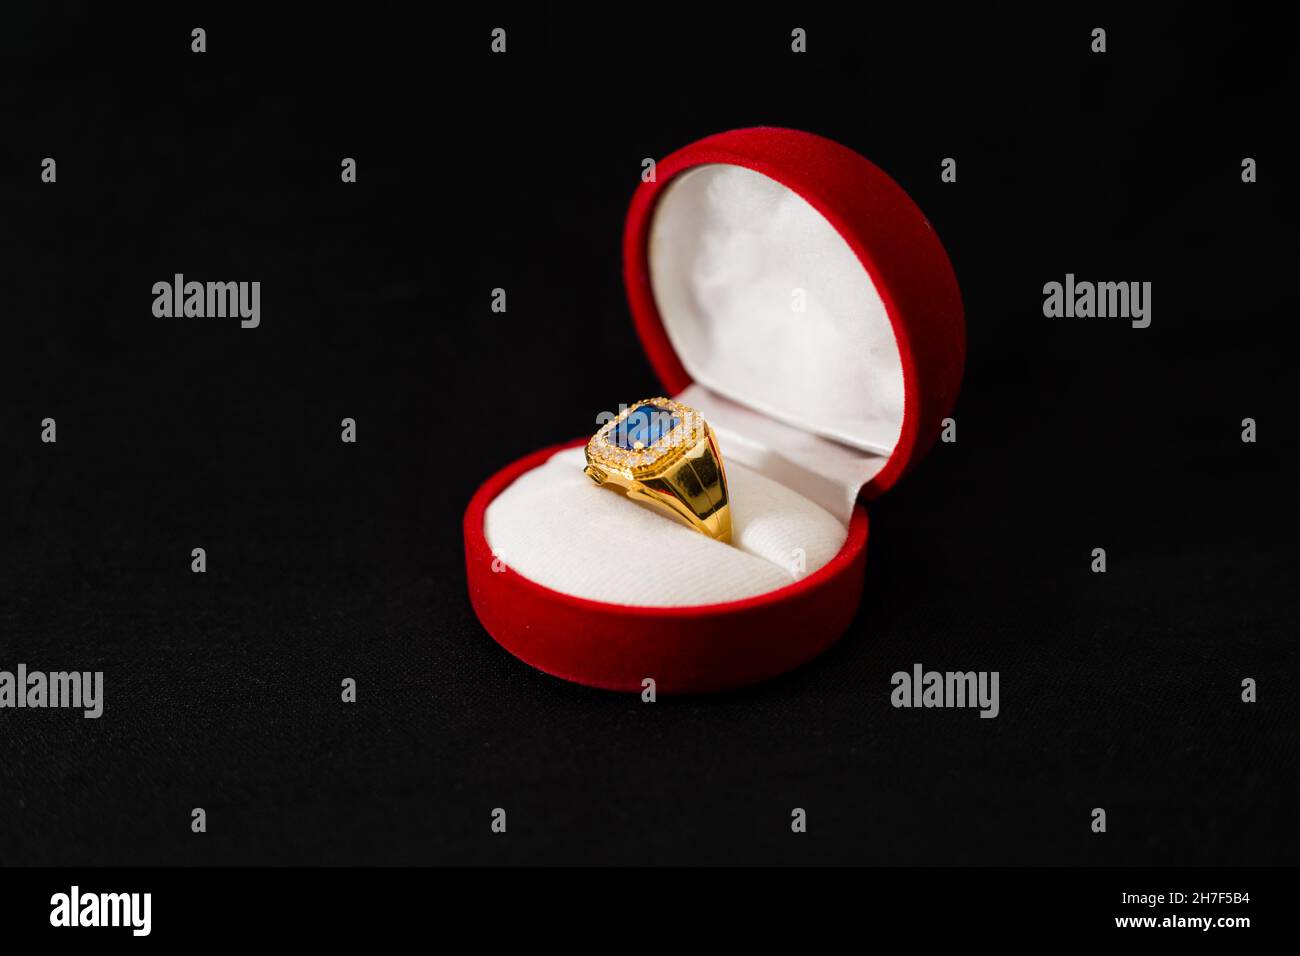 Kostbarer goldener Ring mit einem blauen Stein in der runden Schachtel,  isoliert auf schwarzem Hintergrund Stockfotografie - Alamy